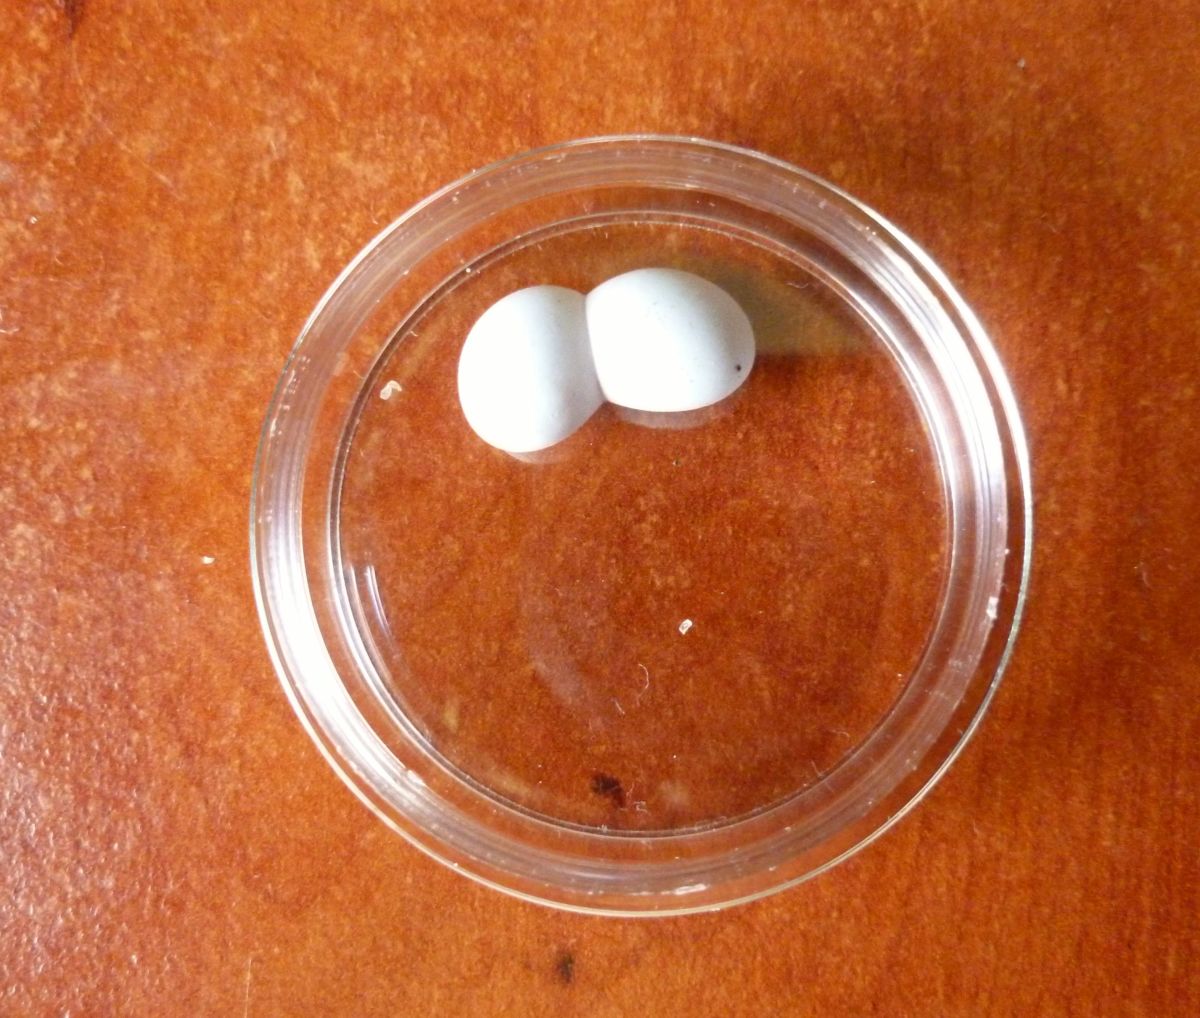 The precious gecko eggs on a petri dish